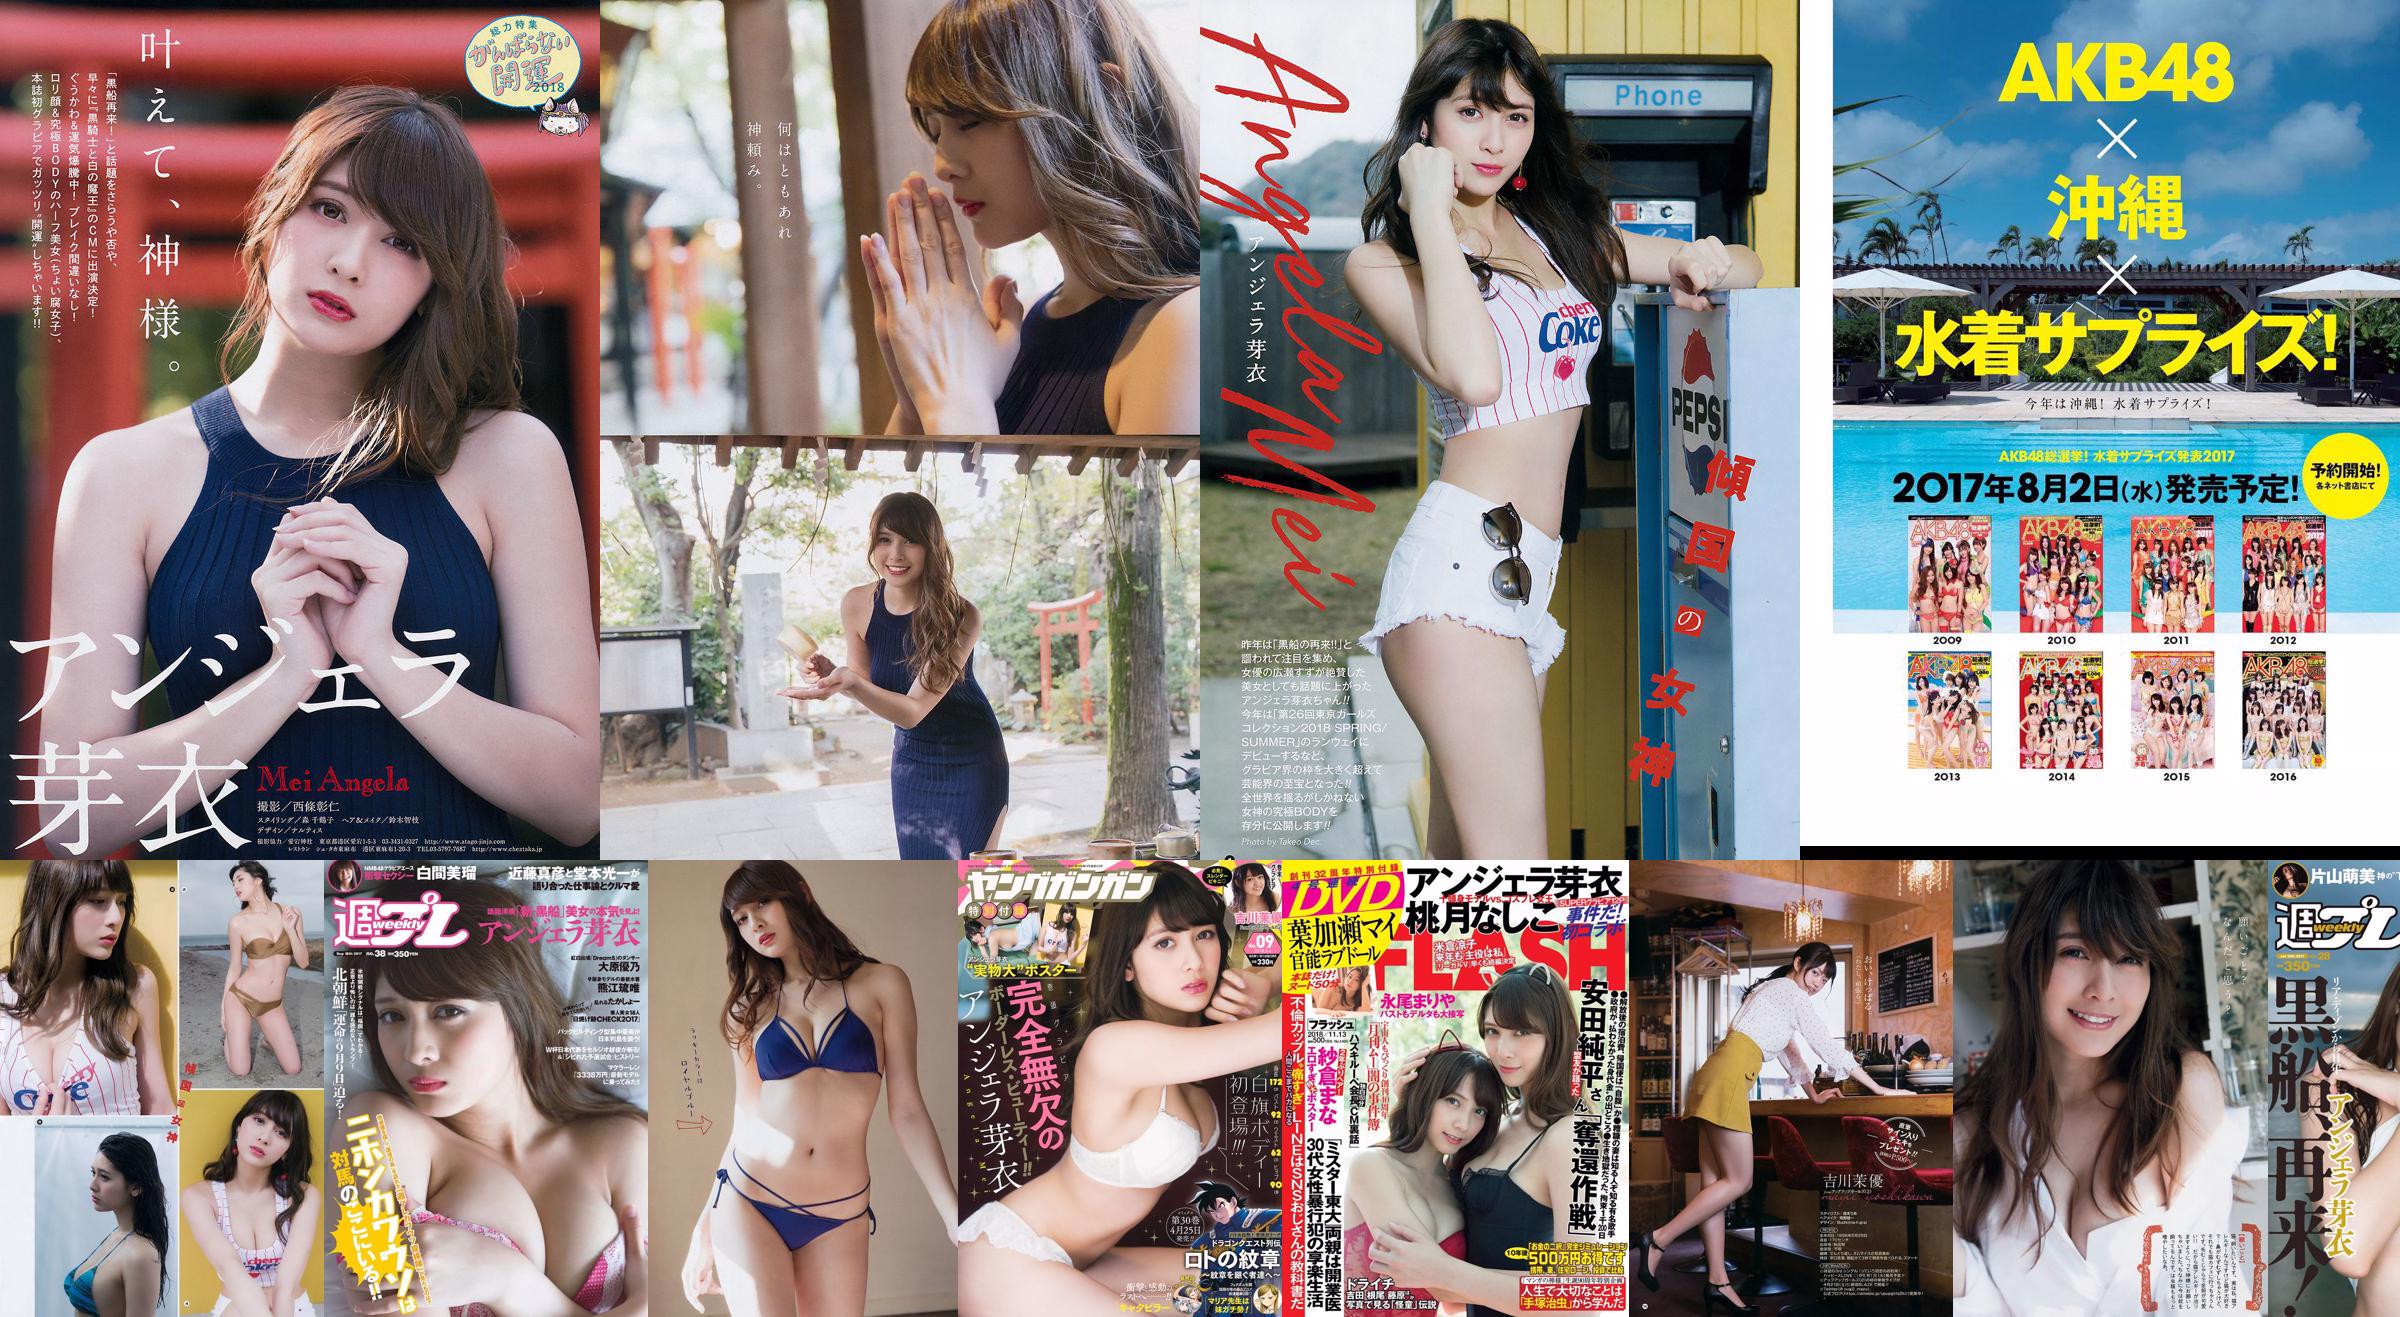 Angela Mei Riho Abiru Yuuna Suzuki Yuno Ohara Moemi Katayama Ito Ohno [Wöchentlicher Playboy] 2017 Nr. 28 Foto No.2a7891 Seite 1